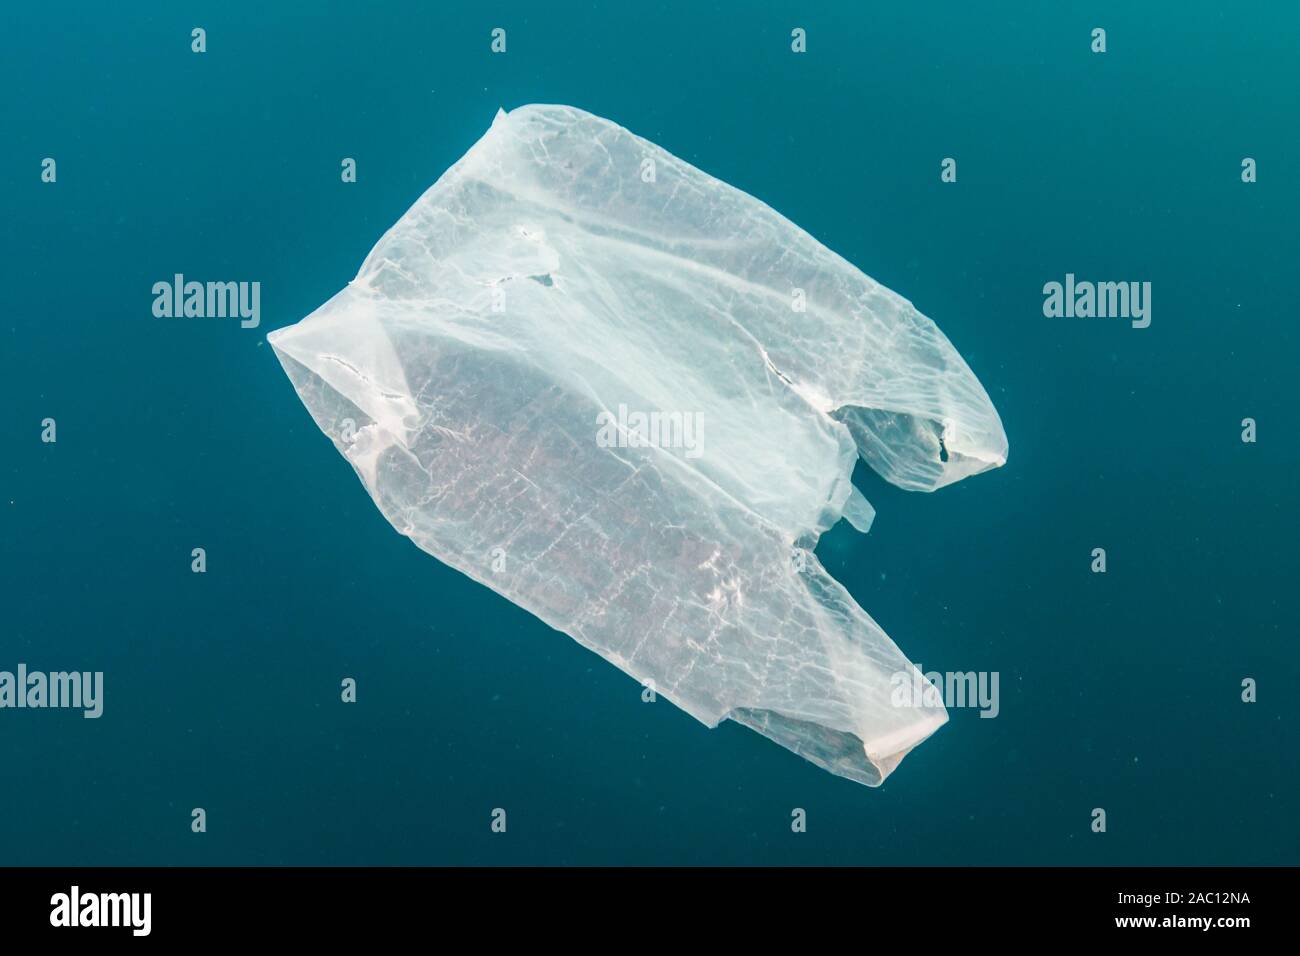 Kunststoff Verschmutzung in den Ozean - eine weggeworfene Tüte Treiben unter Wasser in einem tropischen Meer Stockfoto